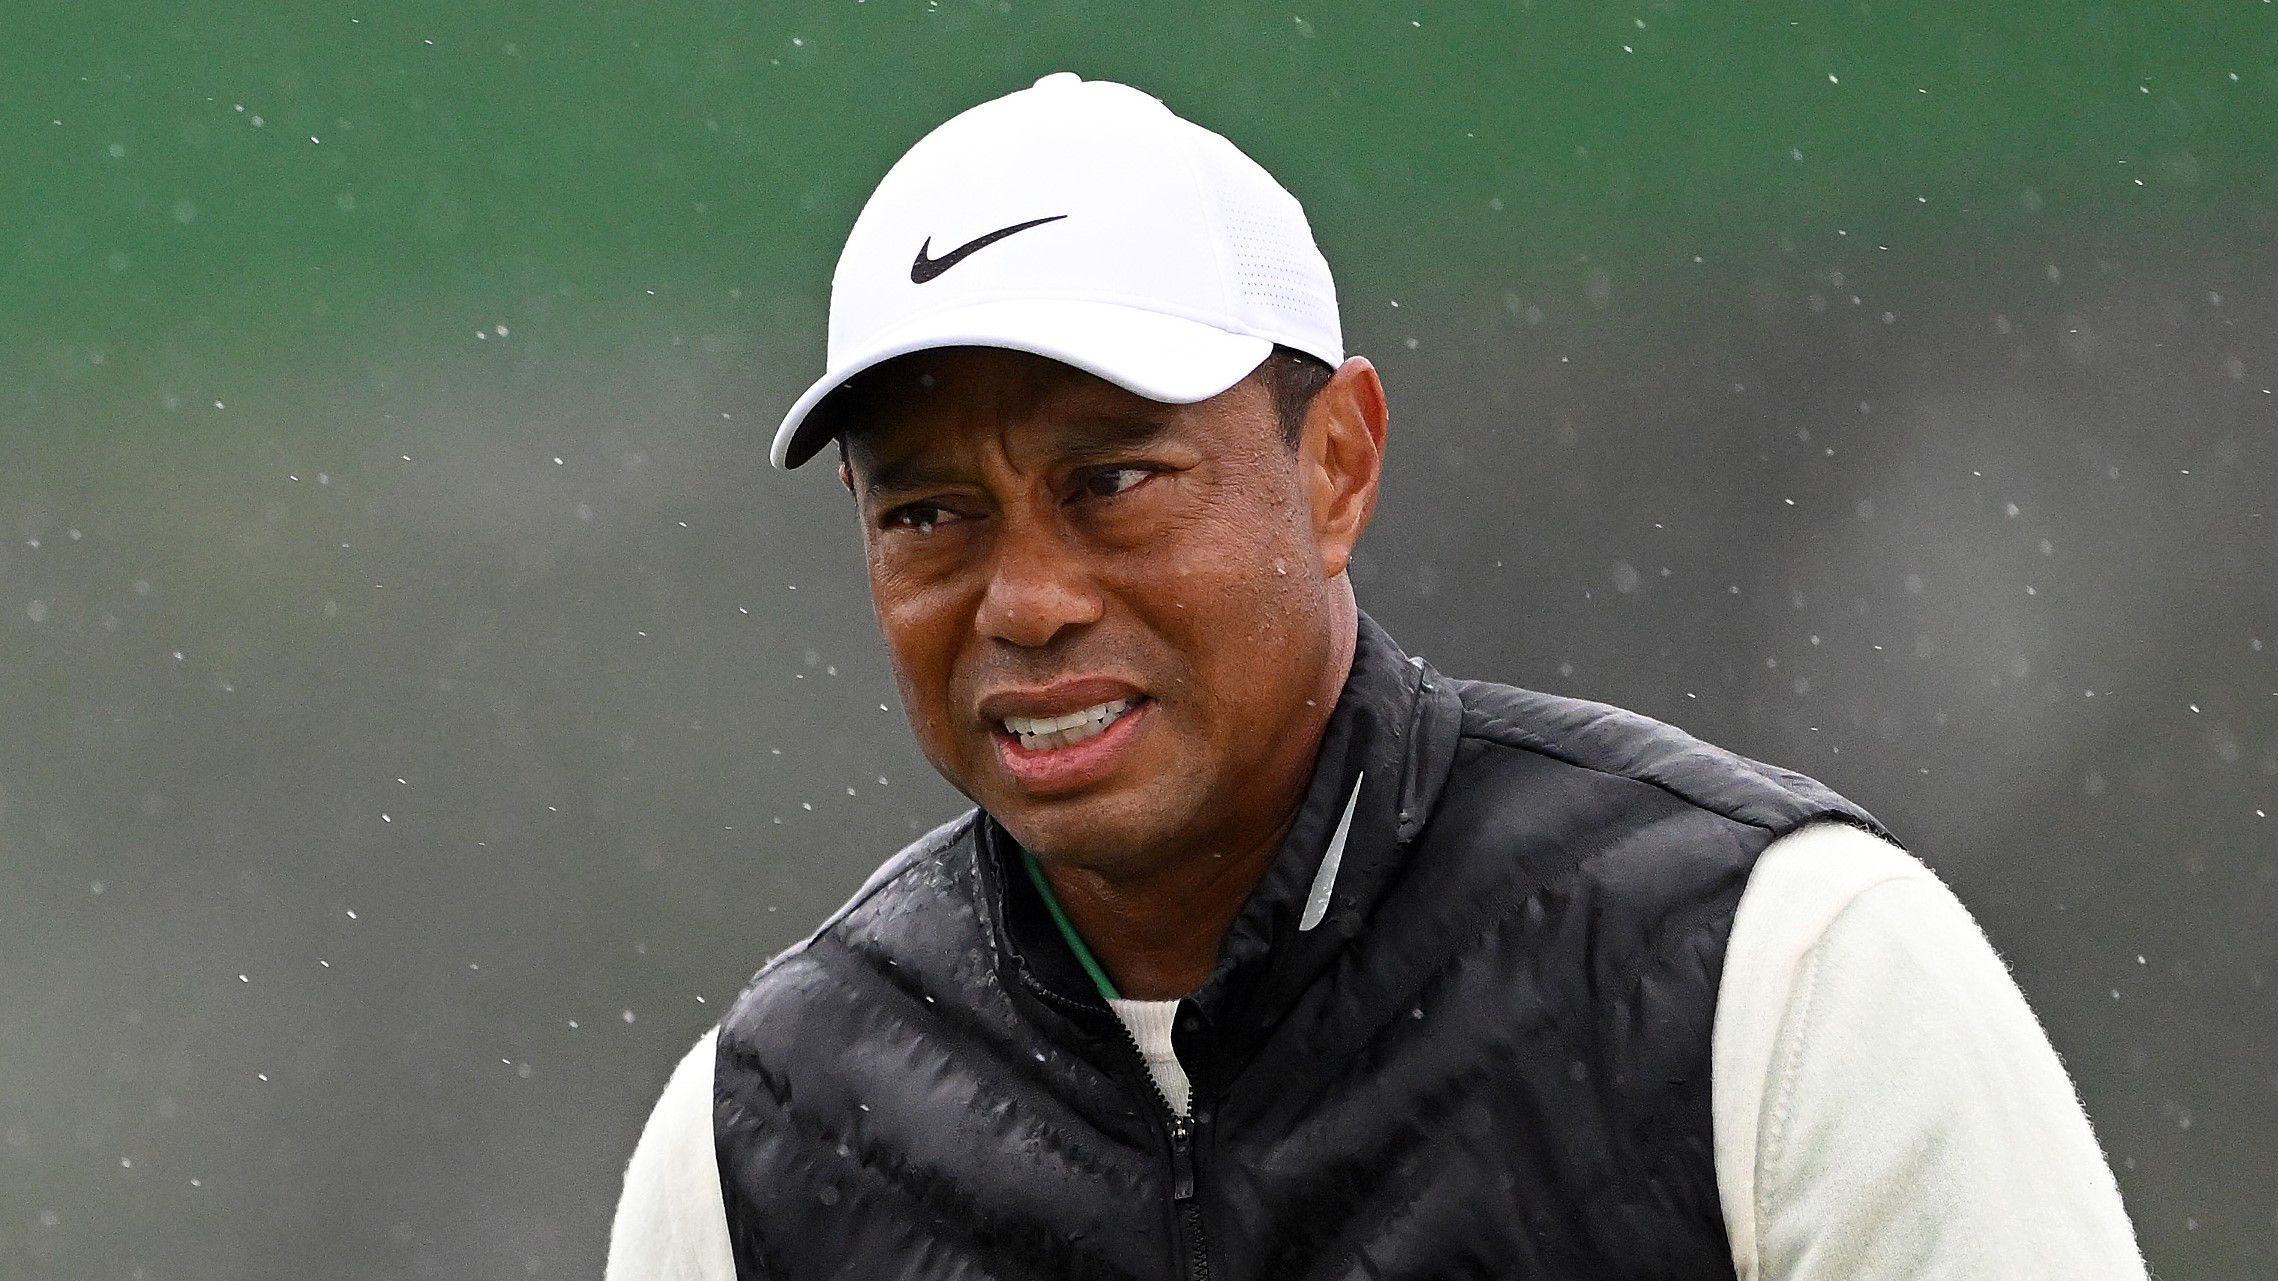 Tiger Woodsot ismét megműtötték